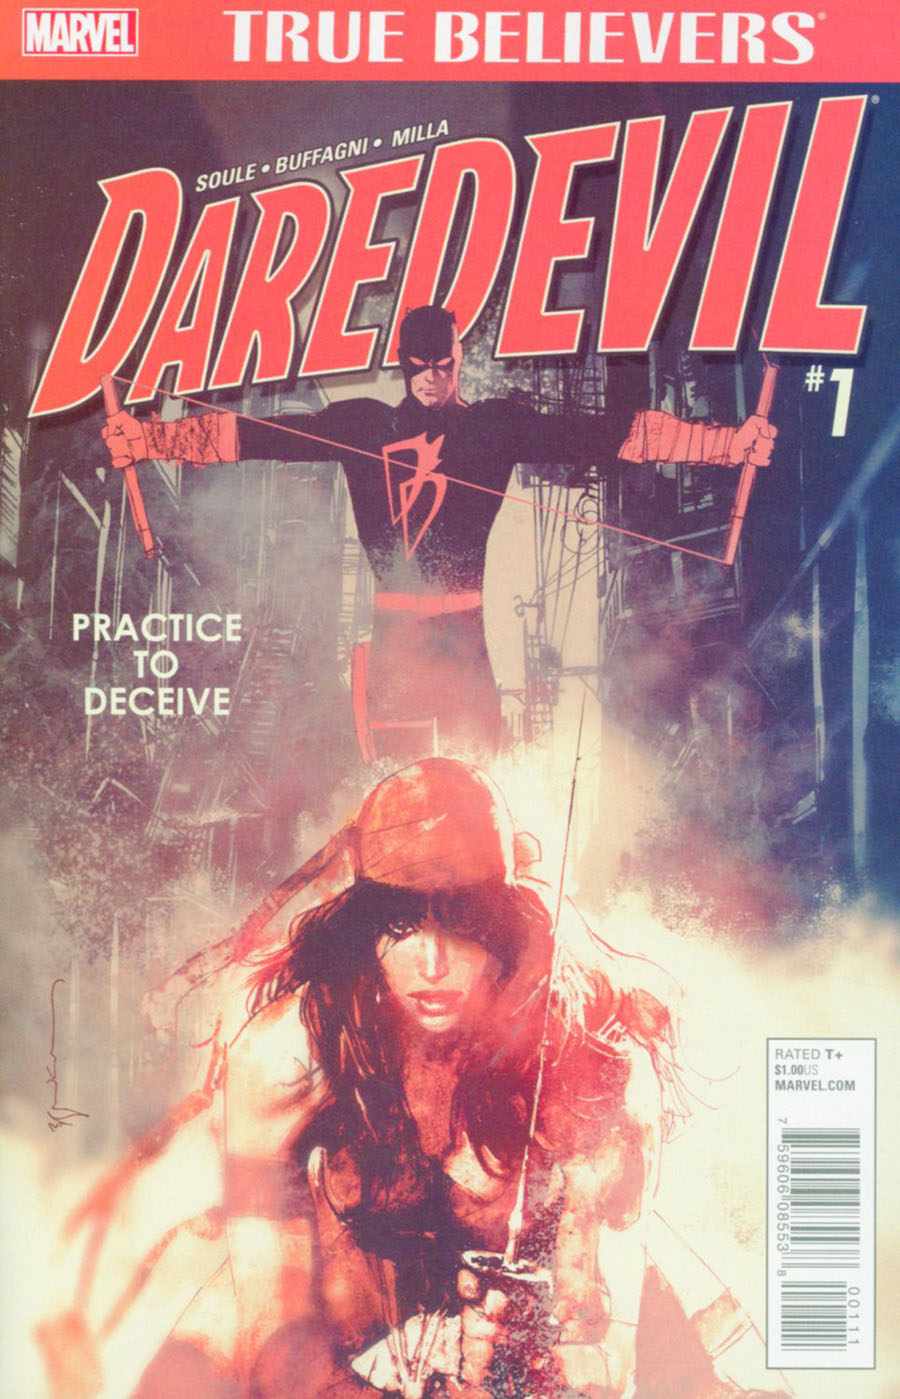 True Believers Daredevil Practice To Deceive #1